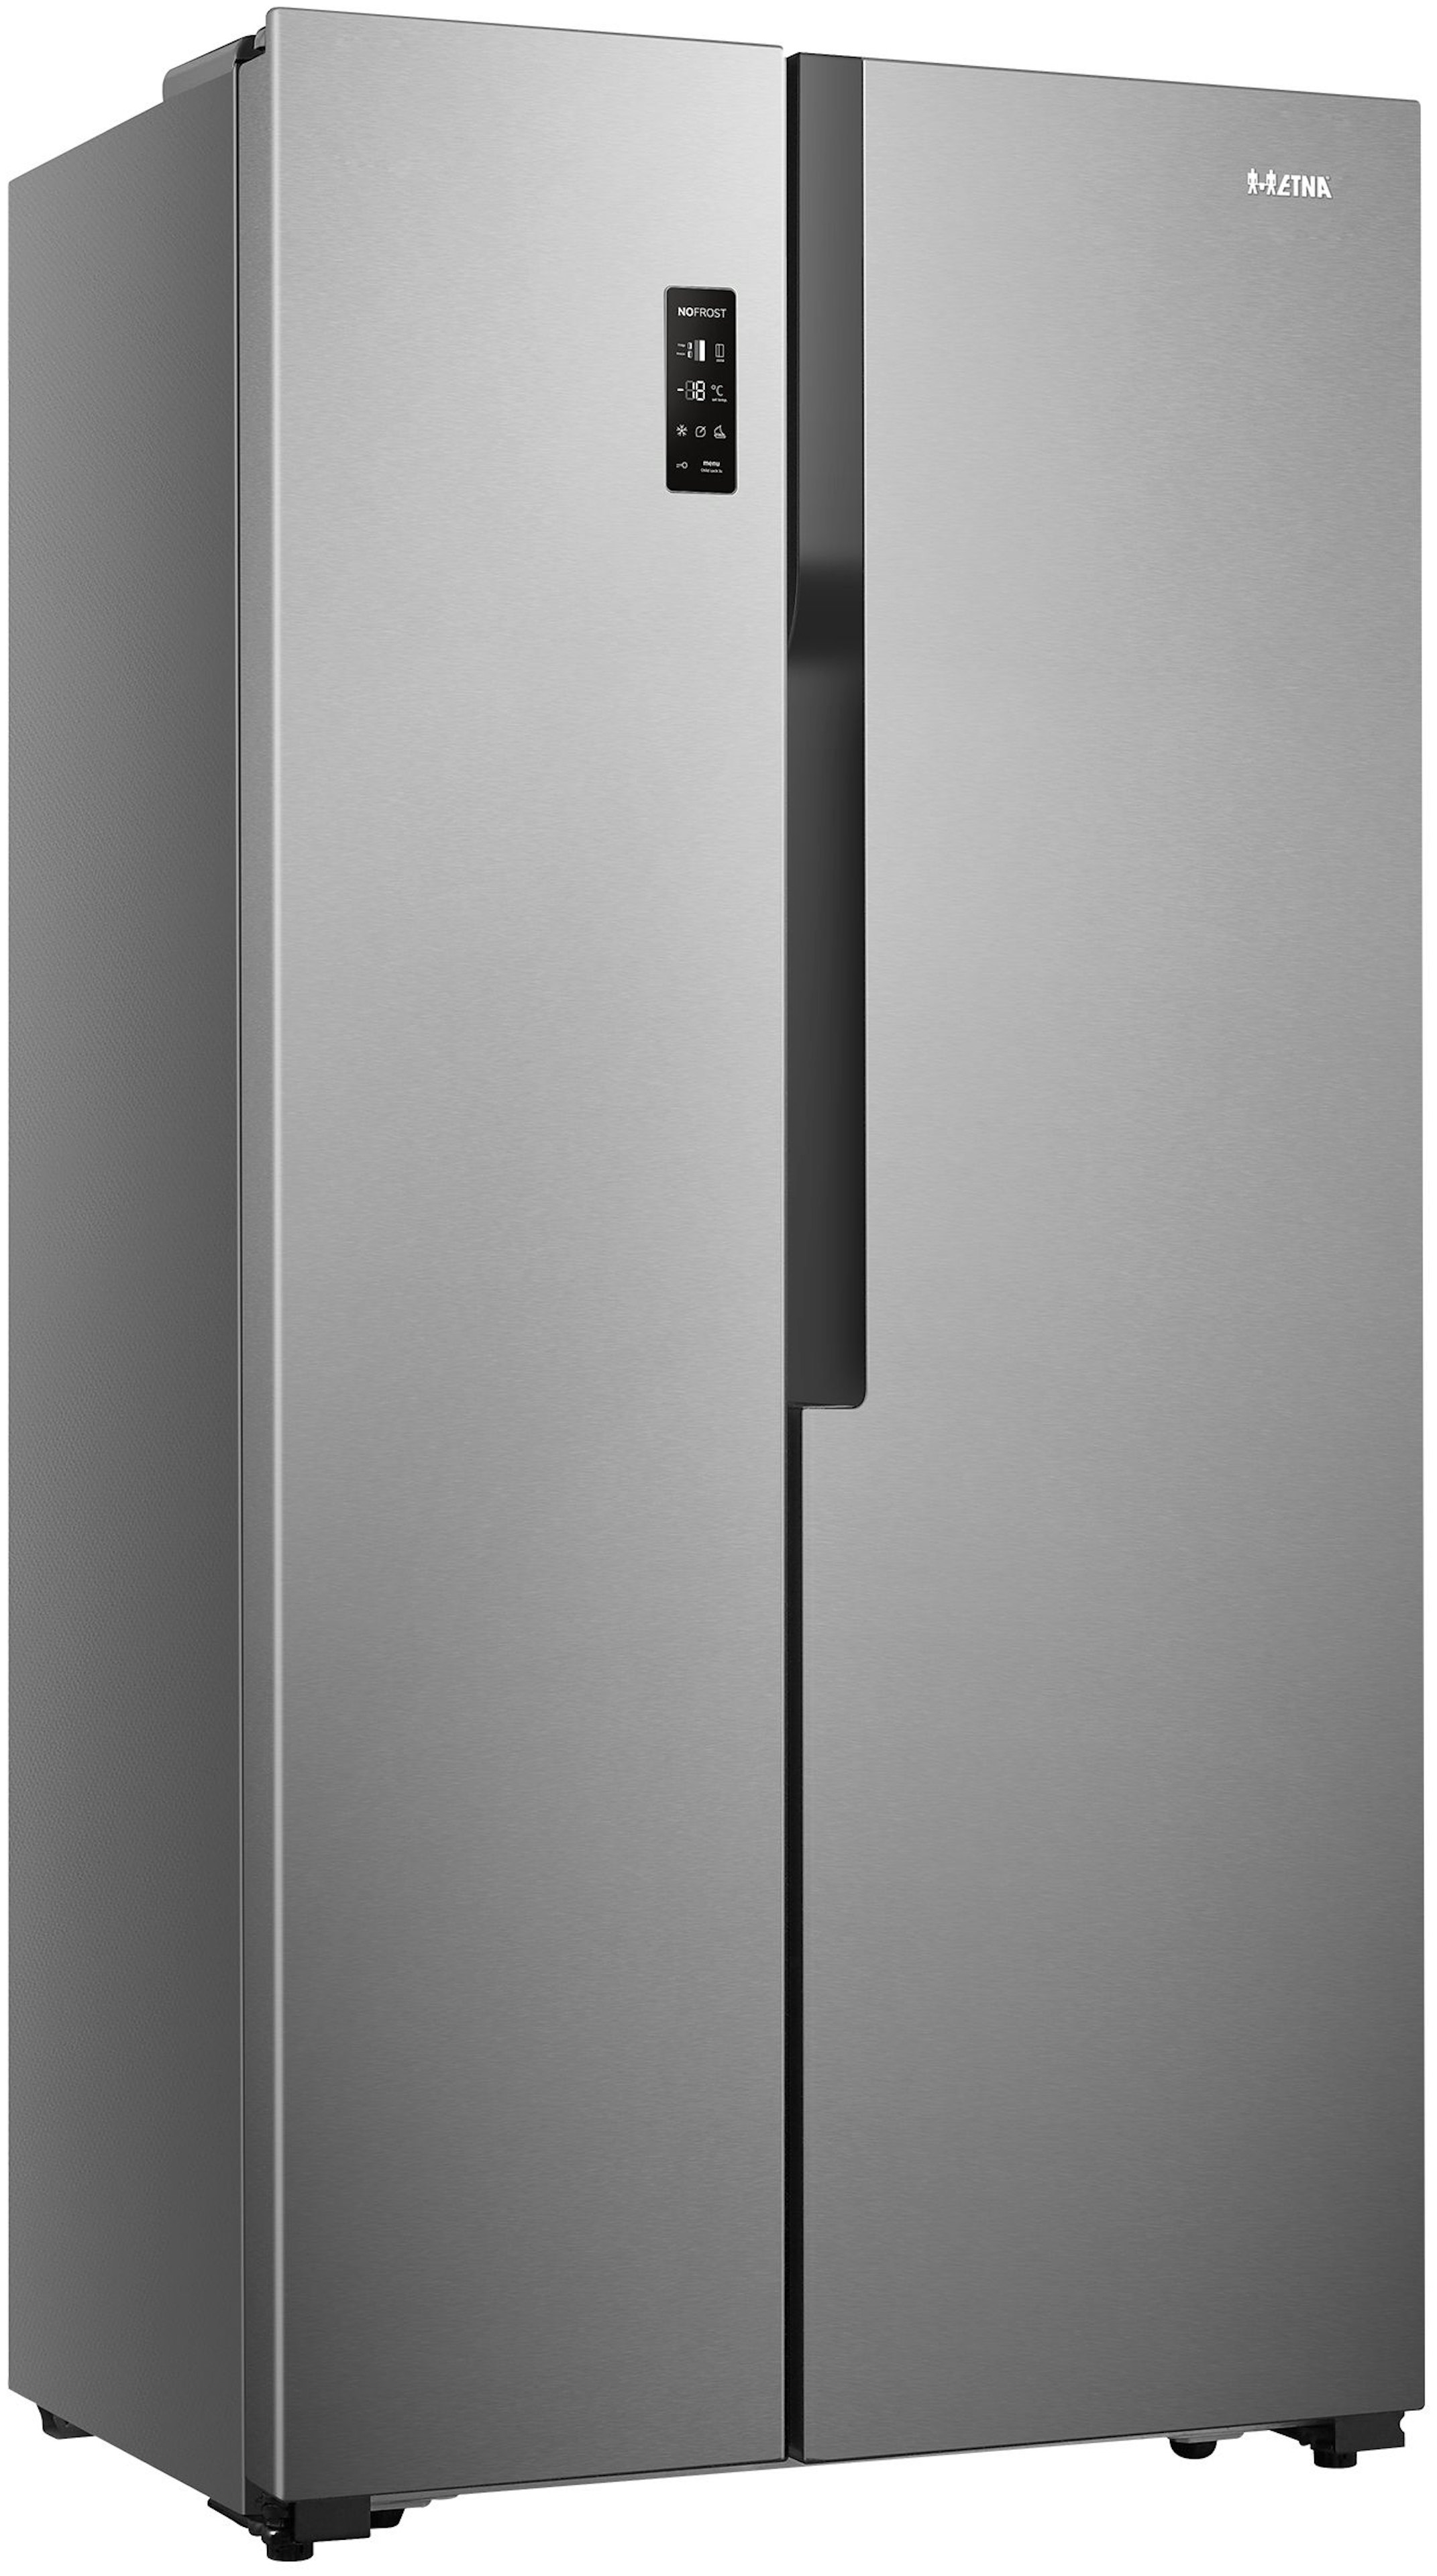 Etna AKV578RVS vrijstaand koelkast afbeelding 6